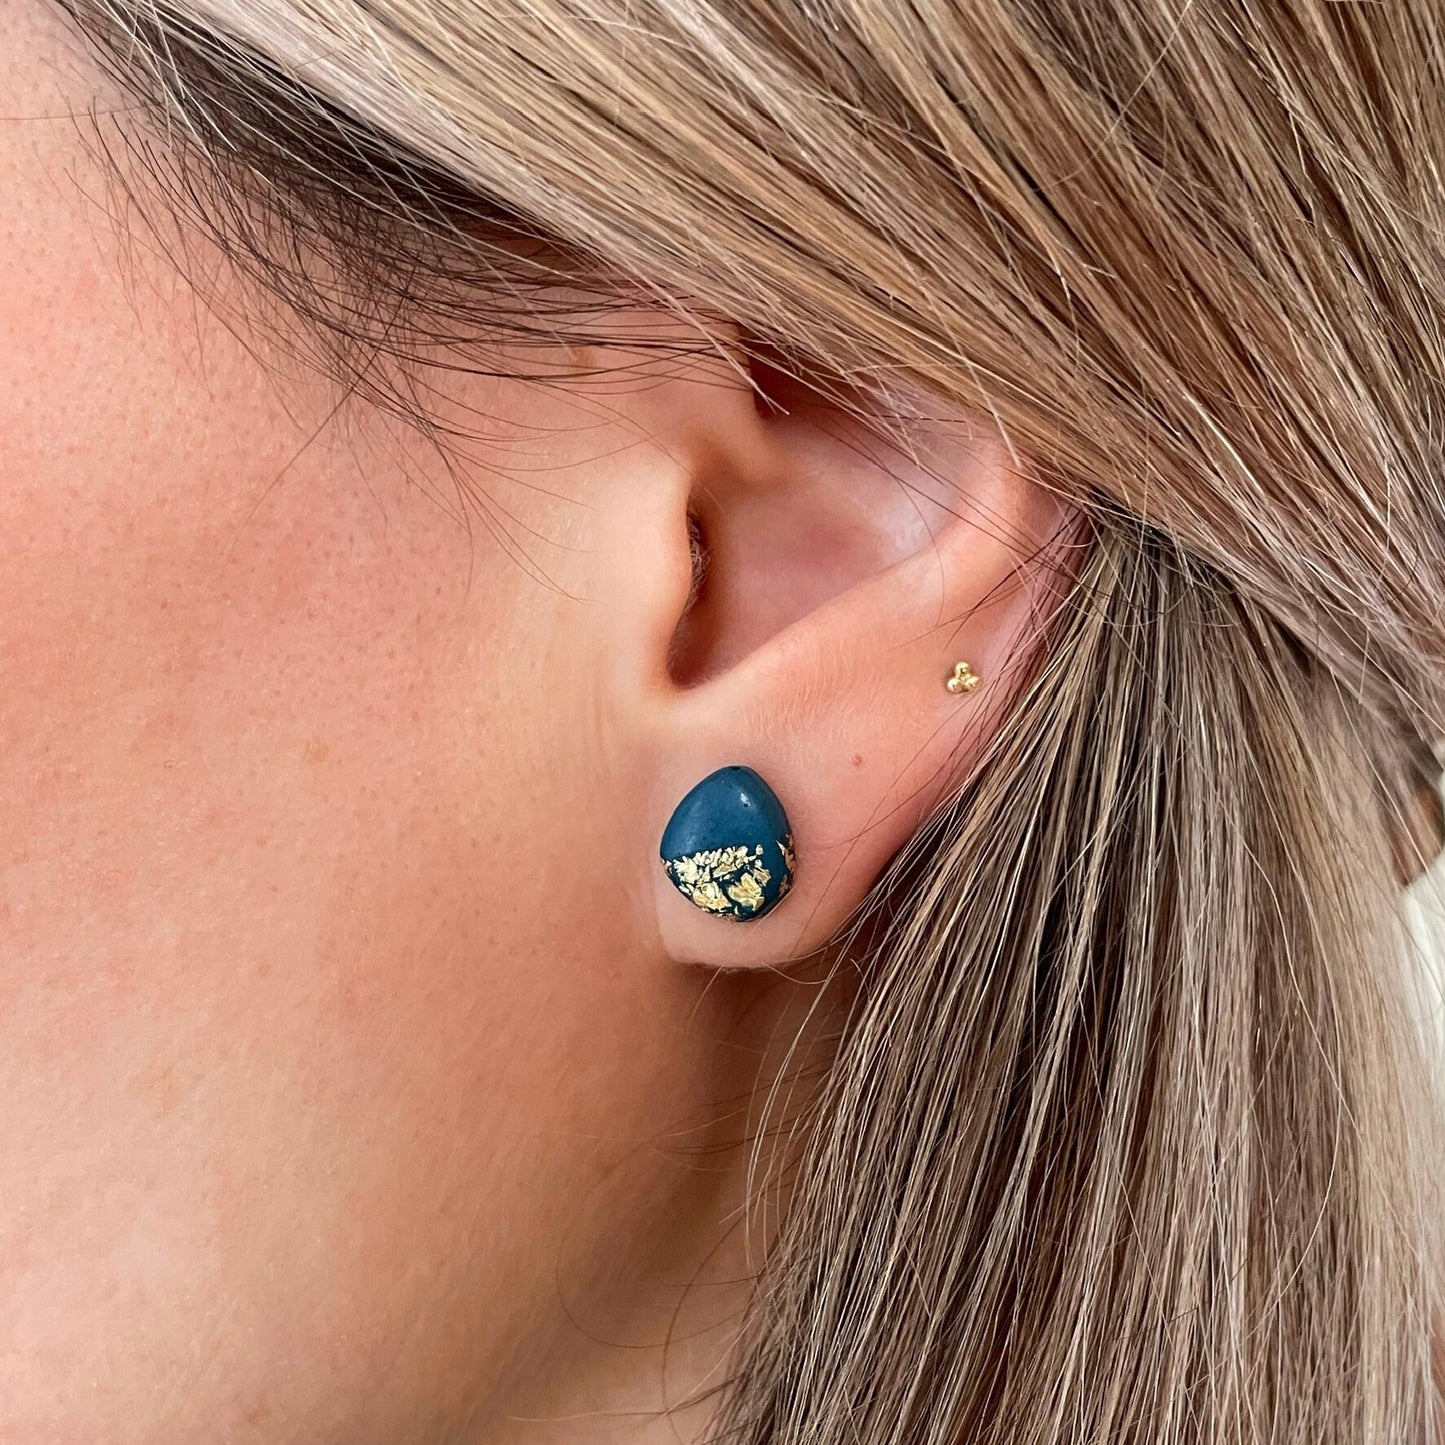 Fleck Earrings // Jesmonite Gold Fleck Stud Earrings